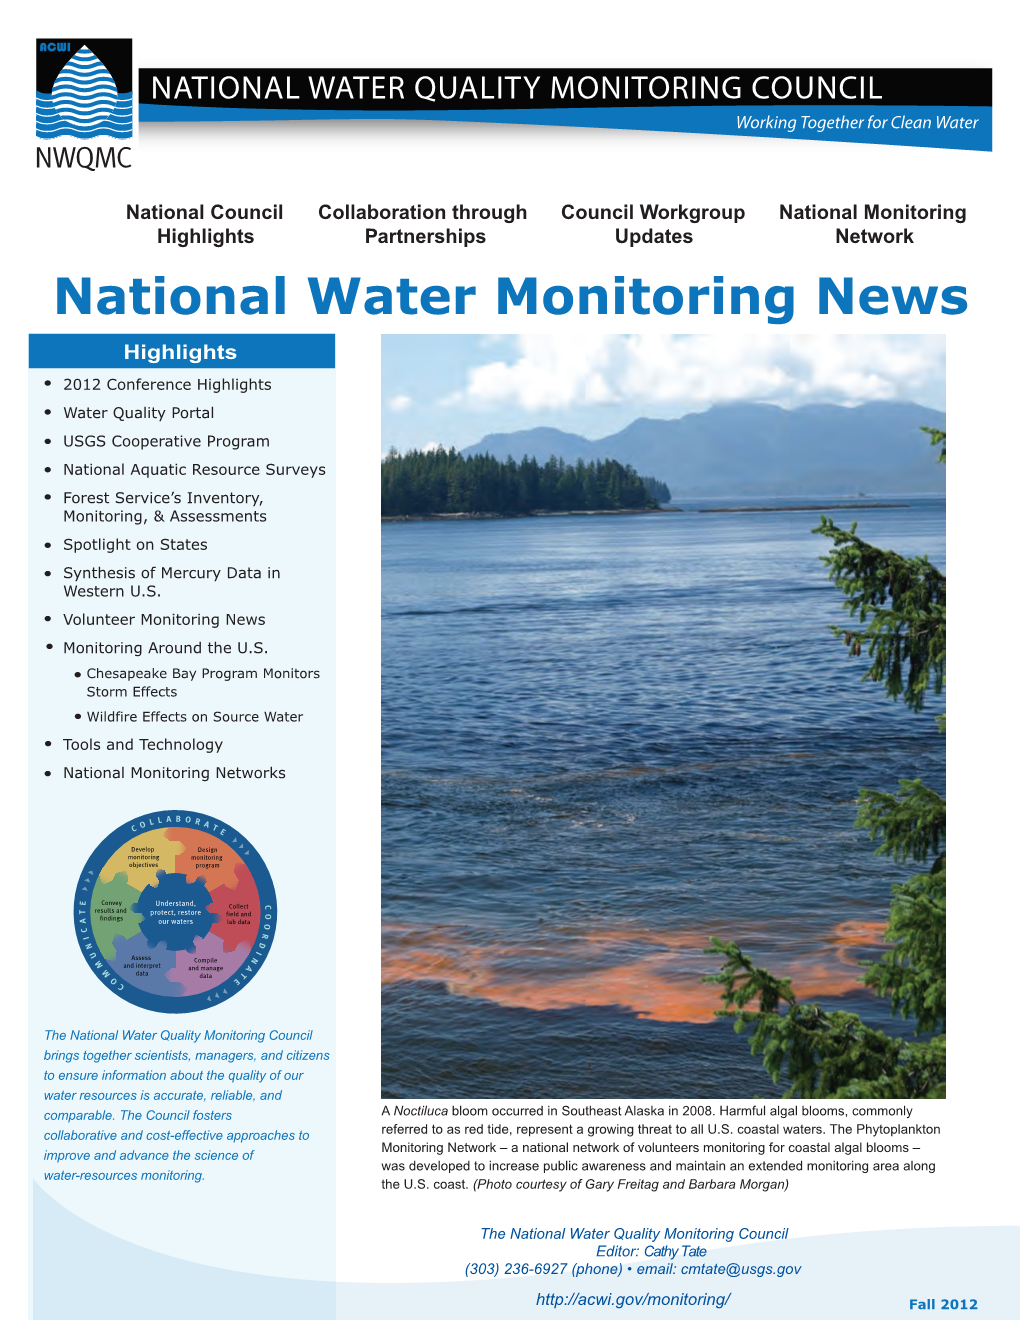 National Water Monitoring News